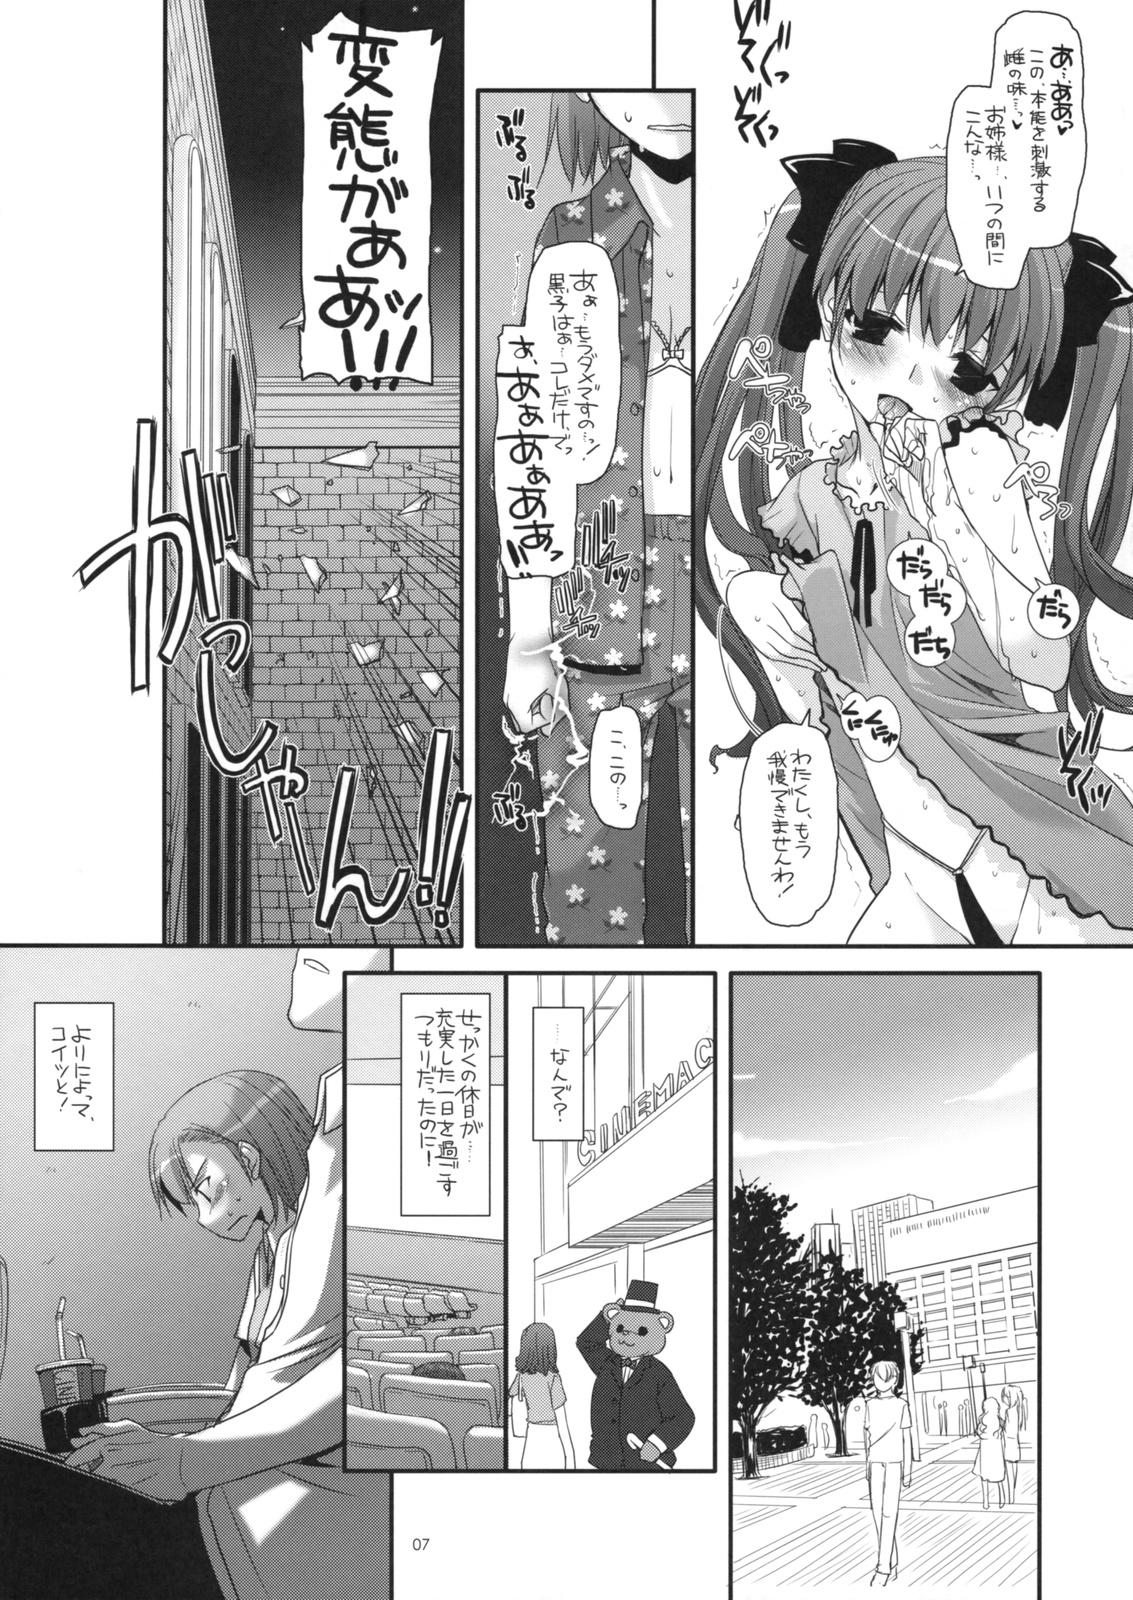 Urine D.L. action 50 - Toaru kagaku no railgun Toaru majutsu no index Latino - Page 6